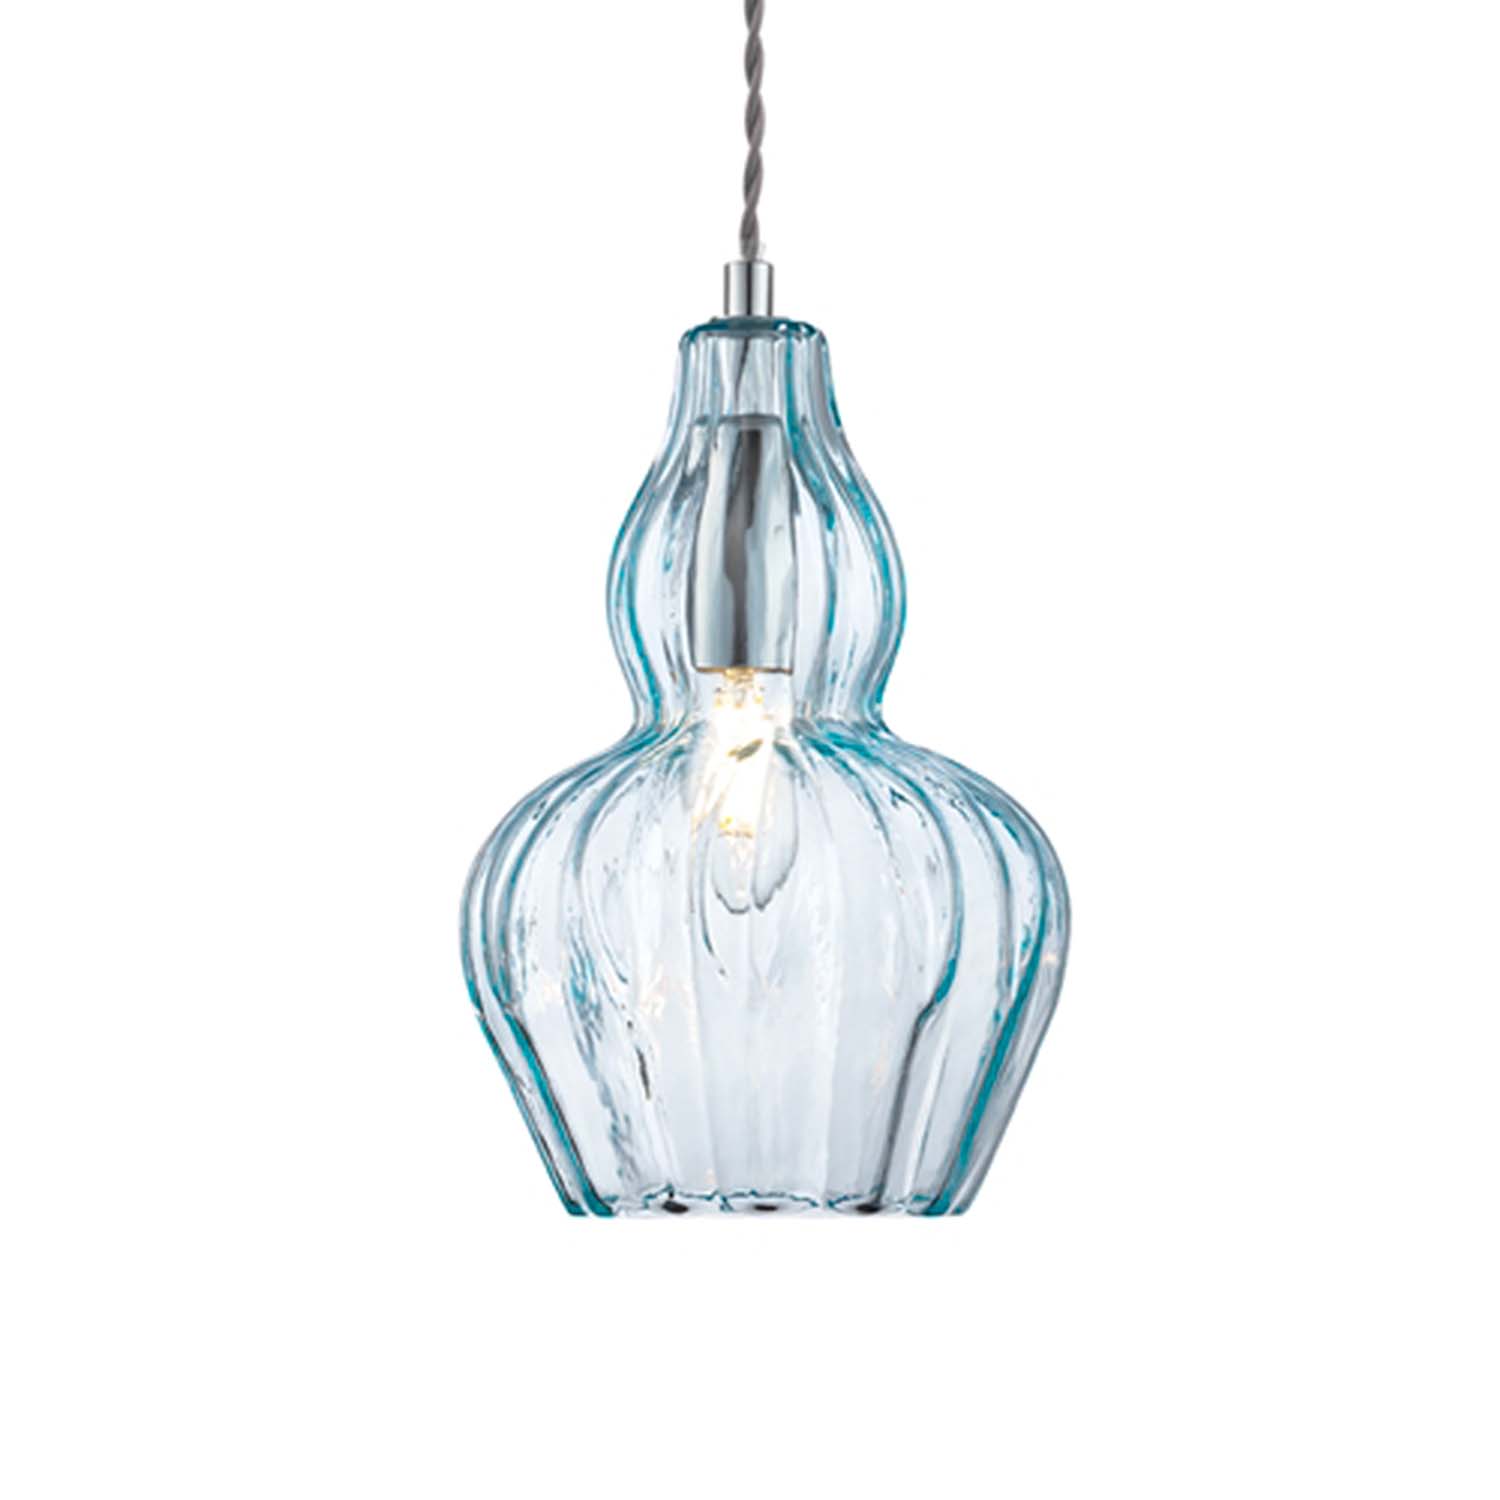 EUSTOMA - Vintage glass chandelier